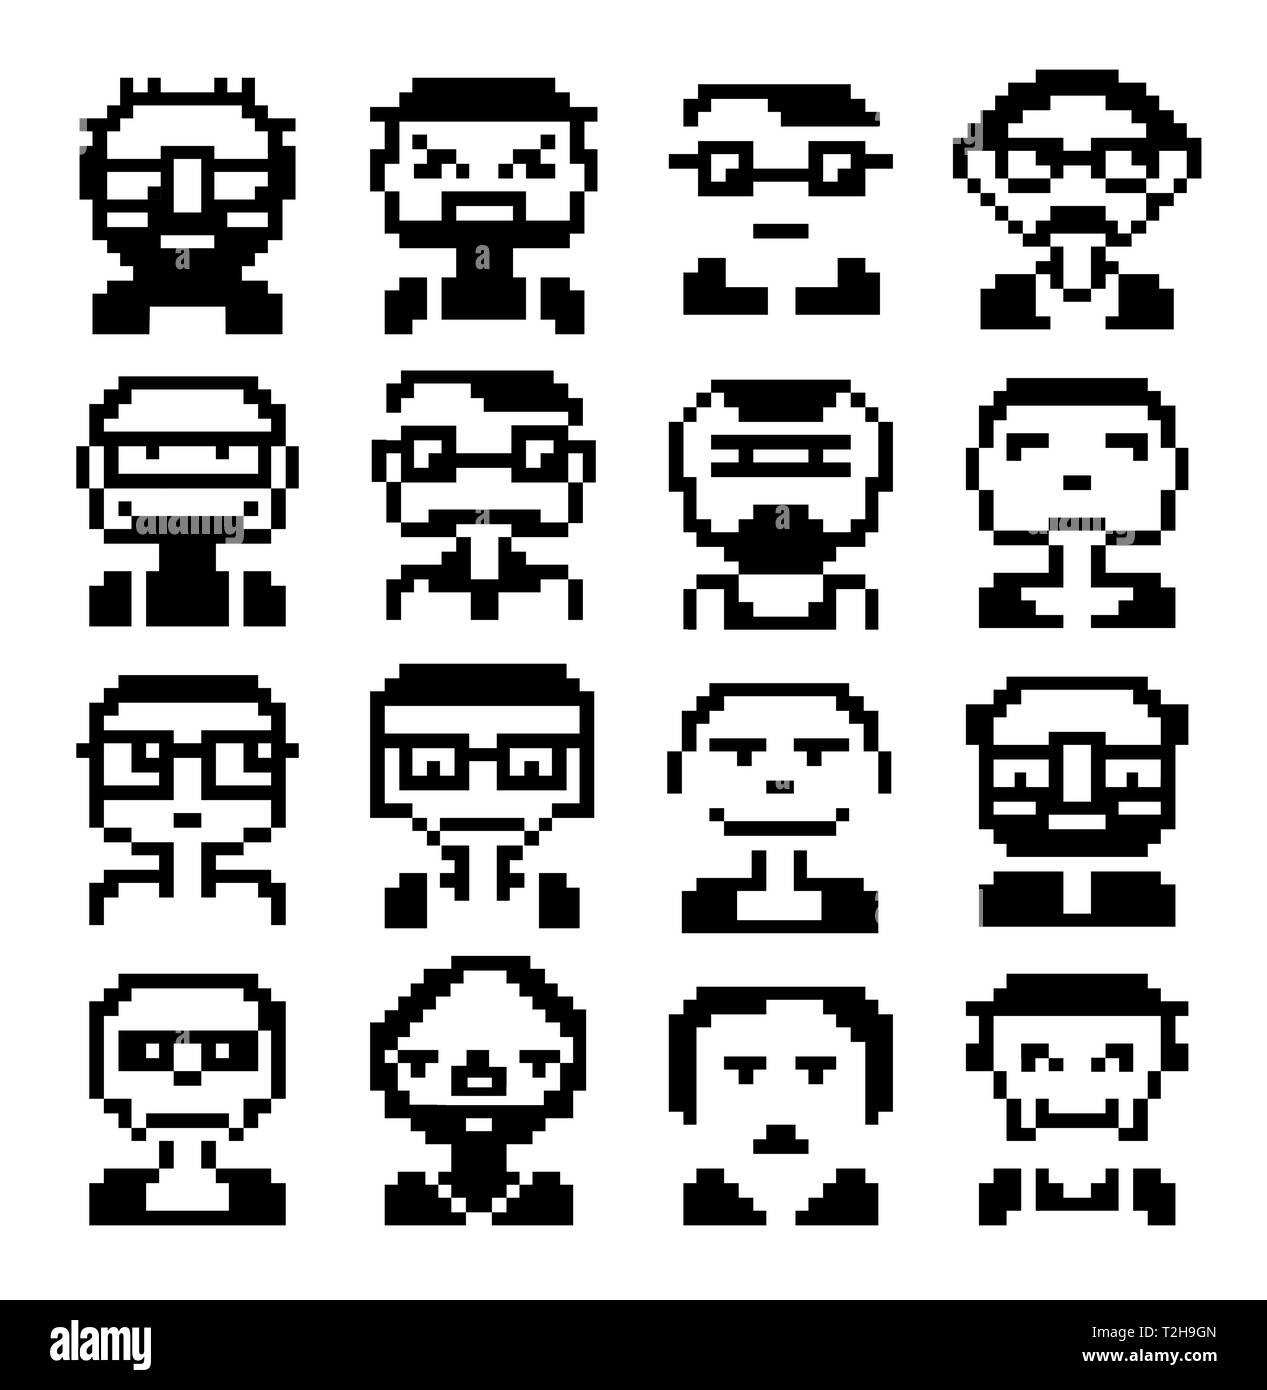 Icônes de visages pixel style pictogramme graphique de l'homme et de la fun people visages féminins Illustration de Vecteur